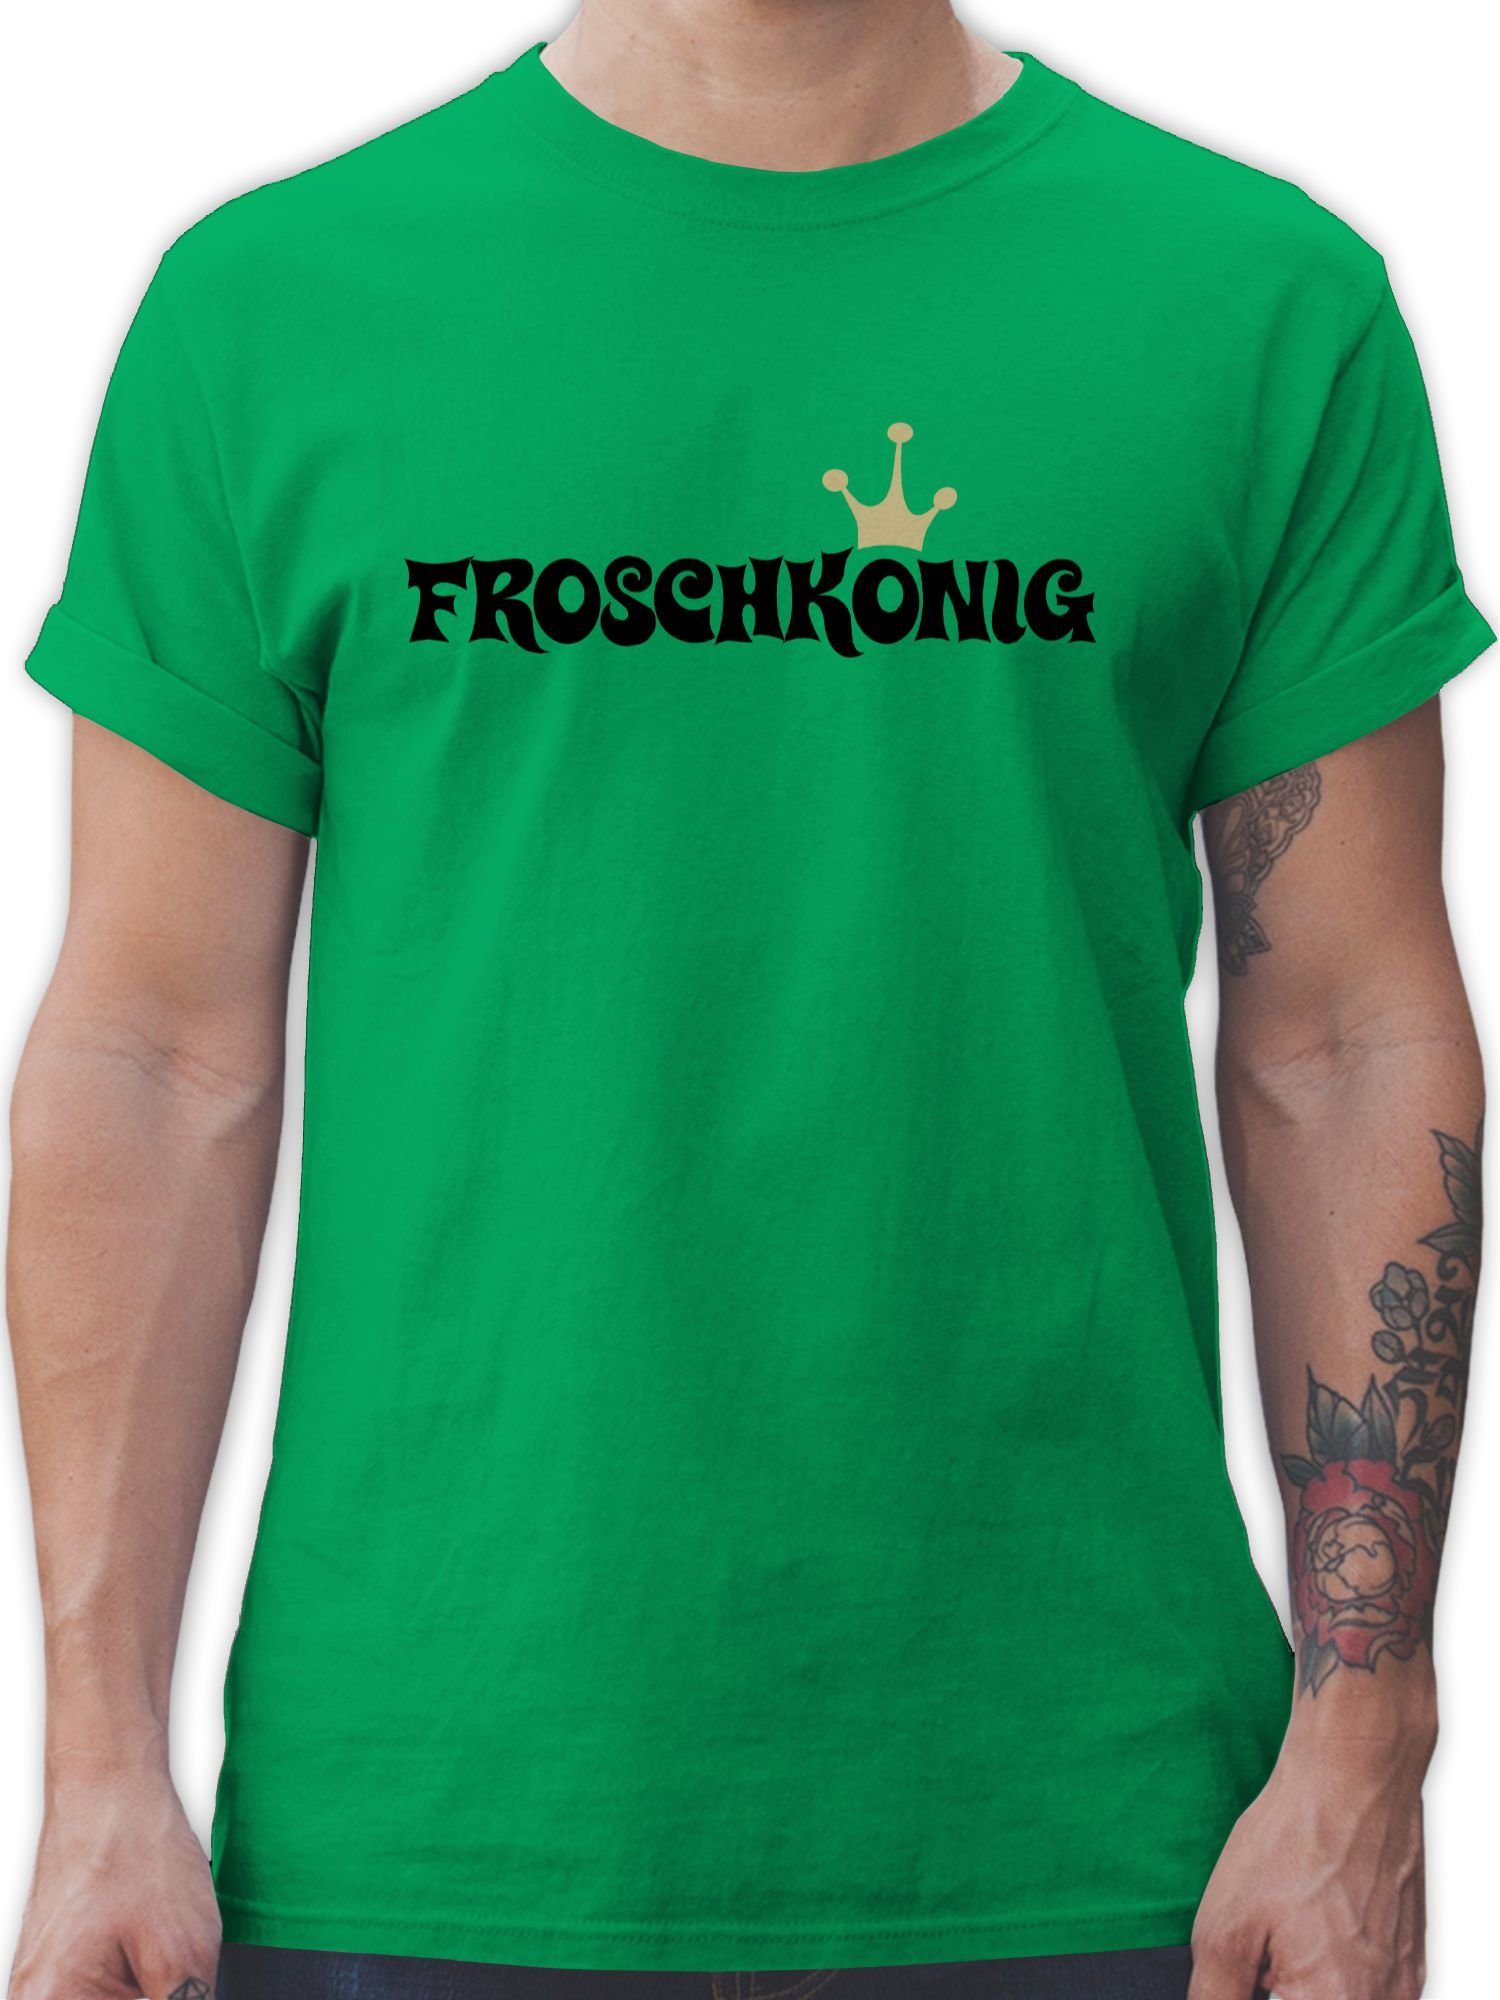 Shirtracer T-Shirt Froschkönig - Karneval Kostüm Herren - Herren Premium T-Shirt  tshirt grün - grüne krone - grünes t-shirt mit frosch - karneval